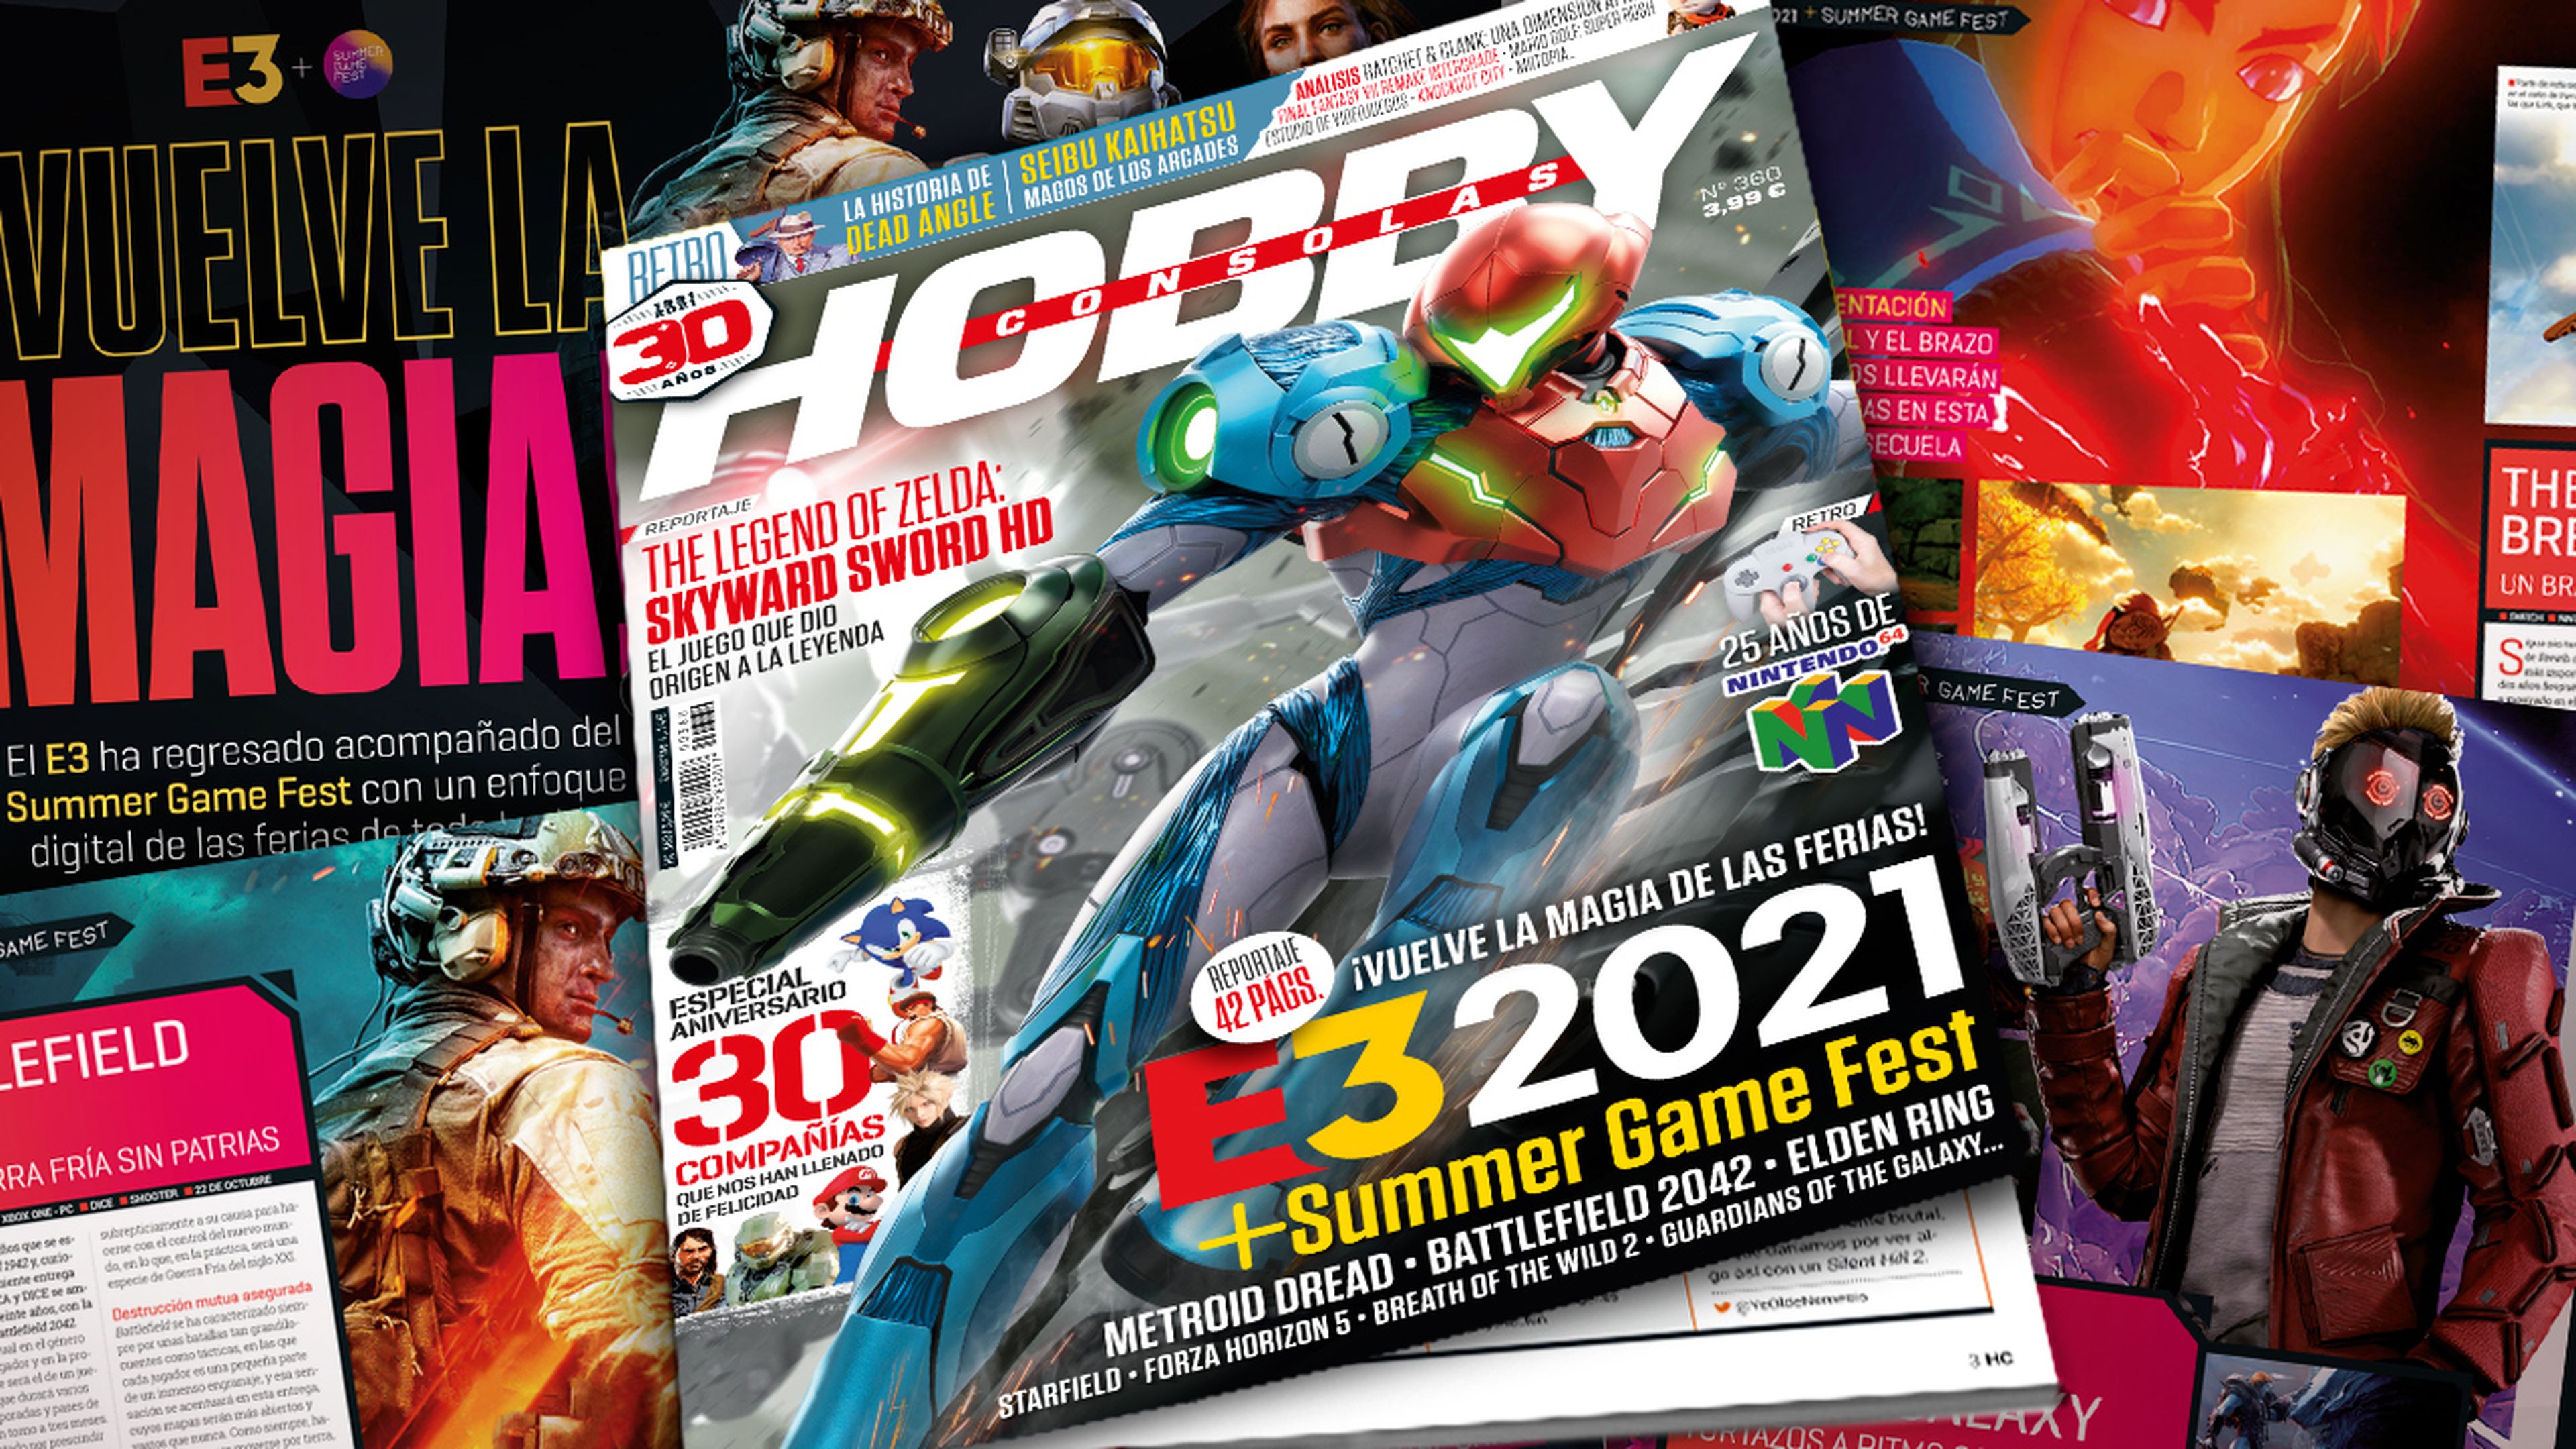 Hobby Consolas 360, a la venta con Metroid Dread en portada y megarreportaje del E3